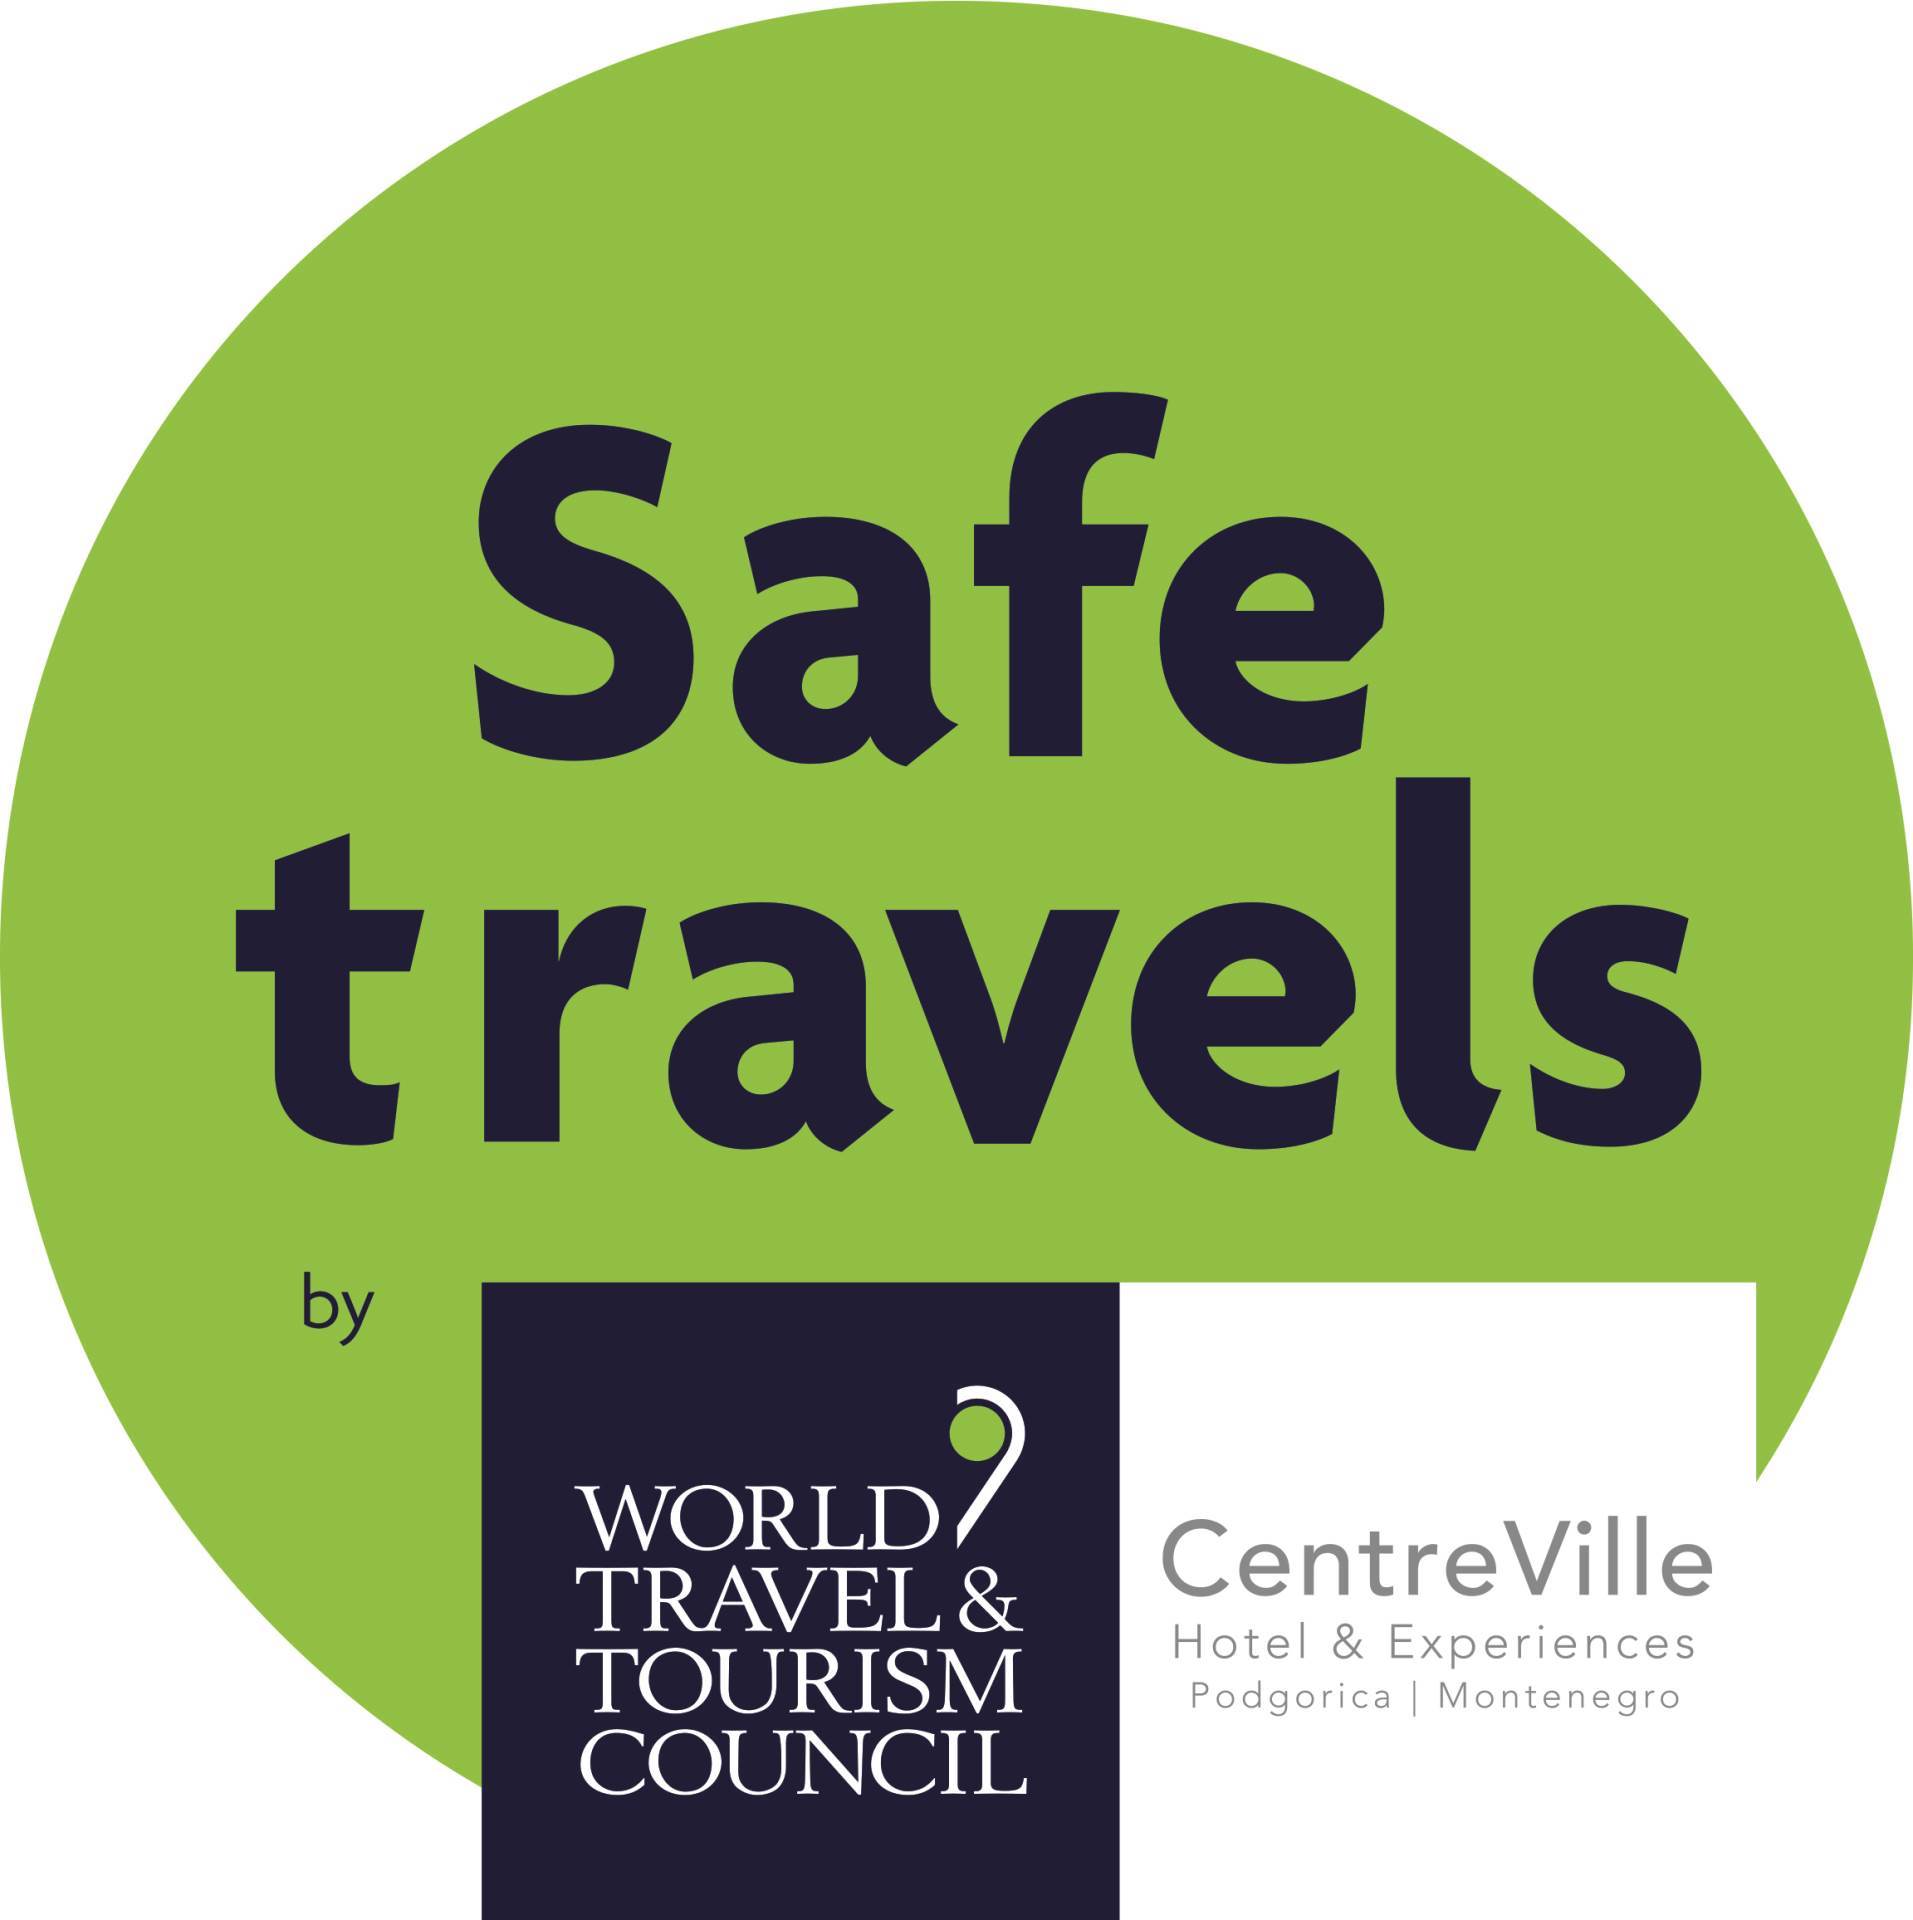  CentreVille Hotel & Experiences dobio „Safe Travels“ oznaku 